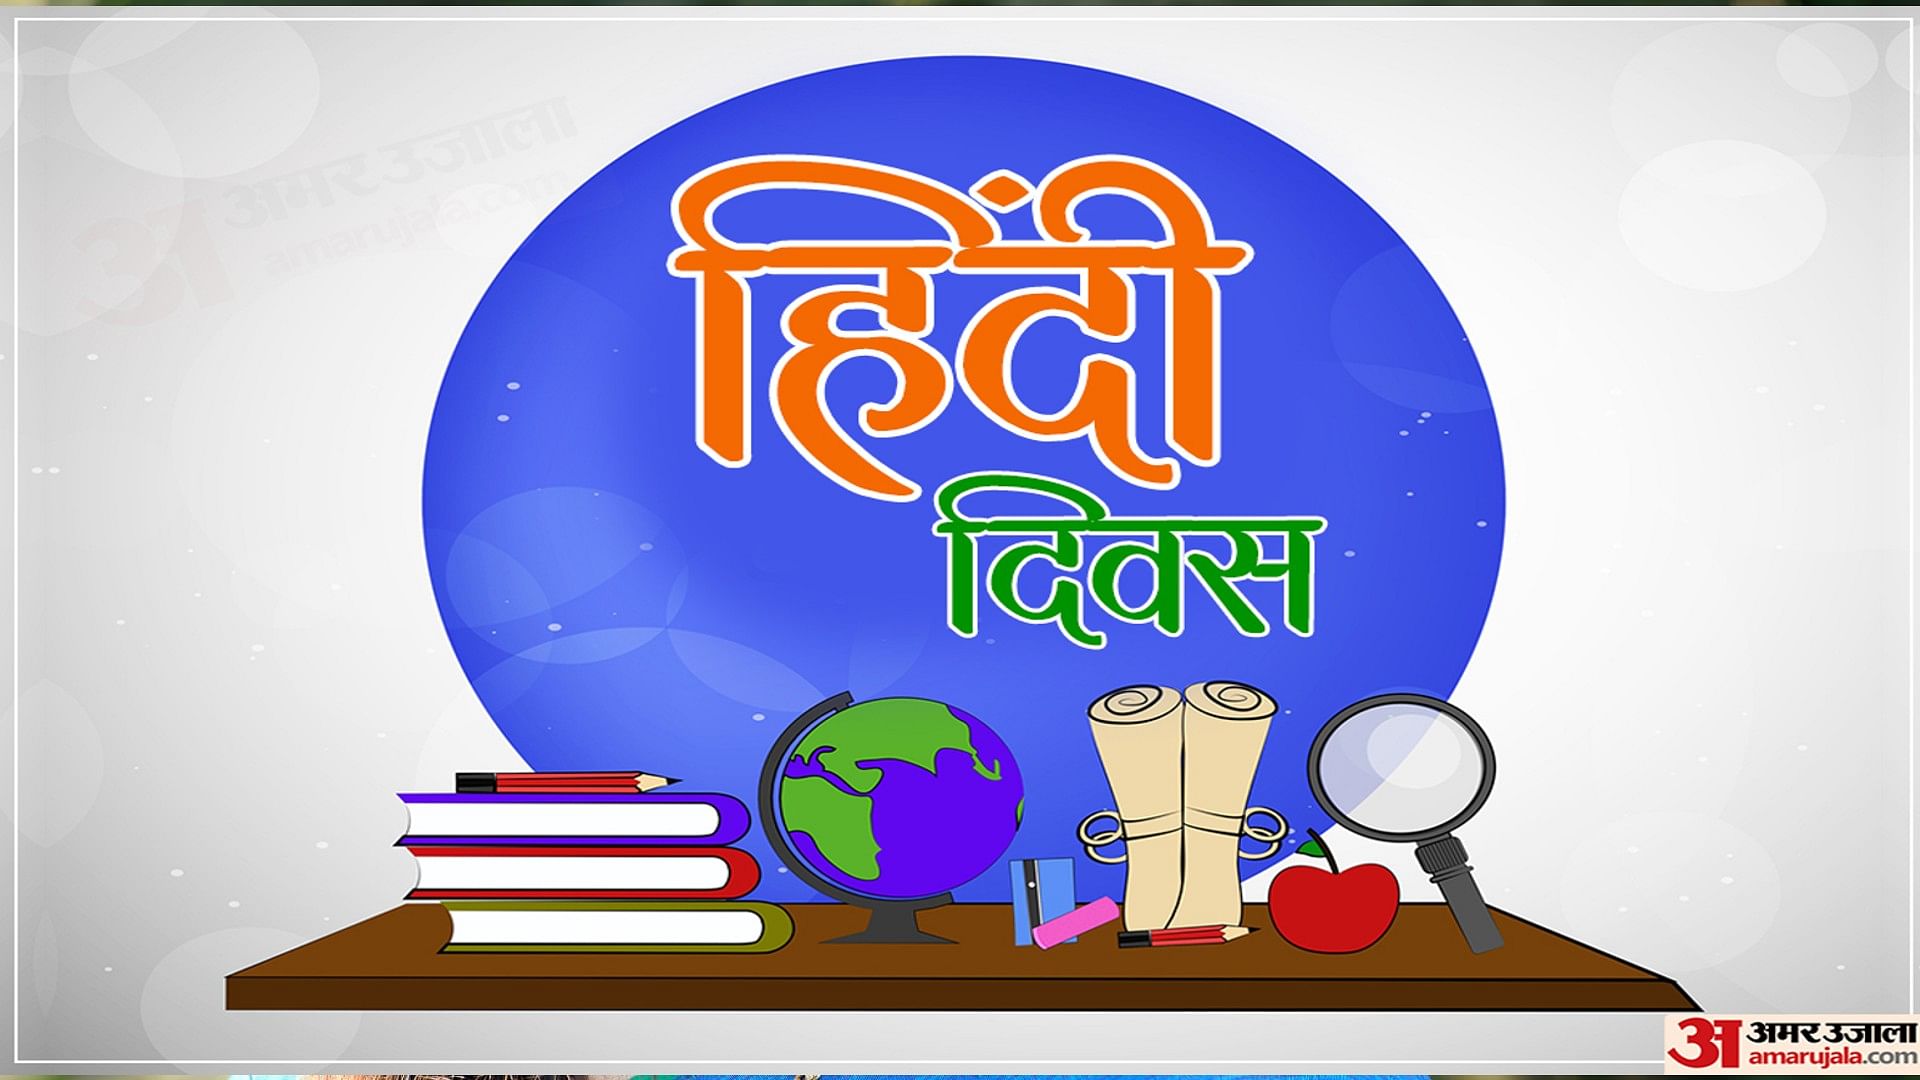 Hindi Diwas Image Ideas 2020: हिन्दी दिवस के मौके पर इन कार्डस से दें  हिन्दी दिवस की शुभकामनाएं - Hindi Diwas Image and Drawing Ideas 2020